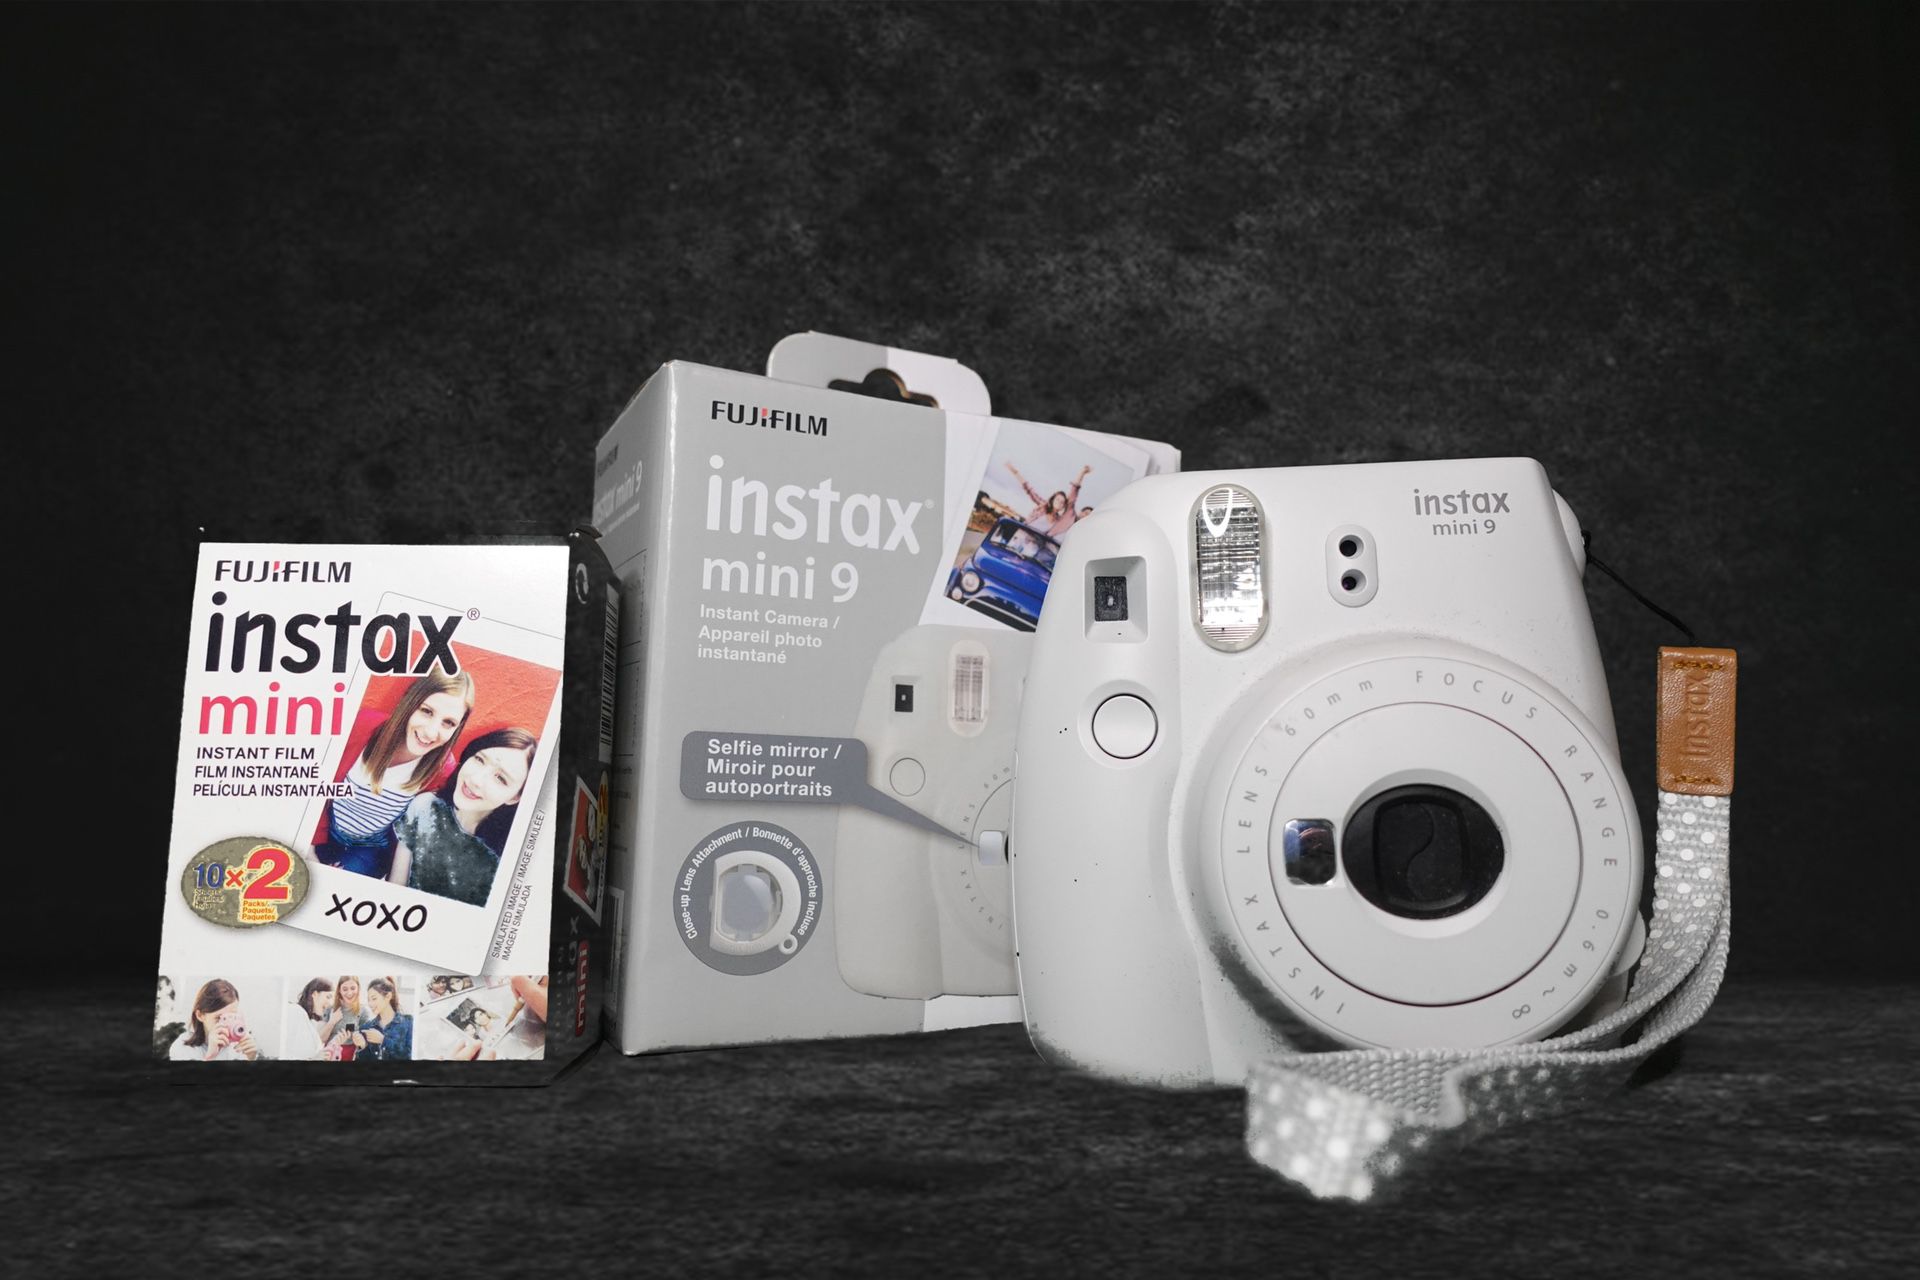 Instax Polaroid Camera